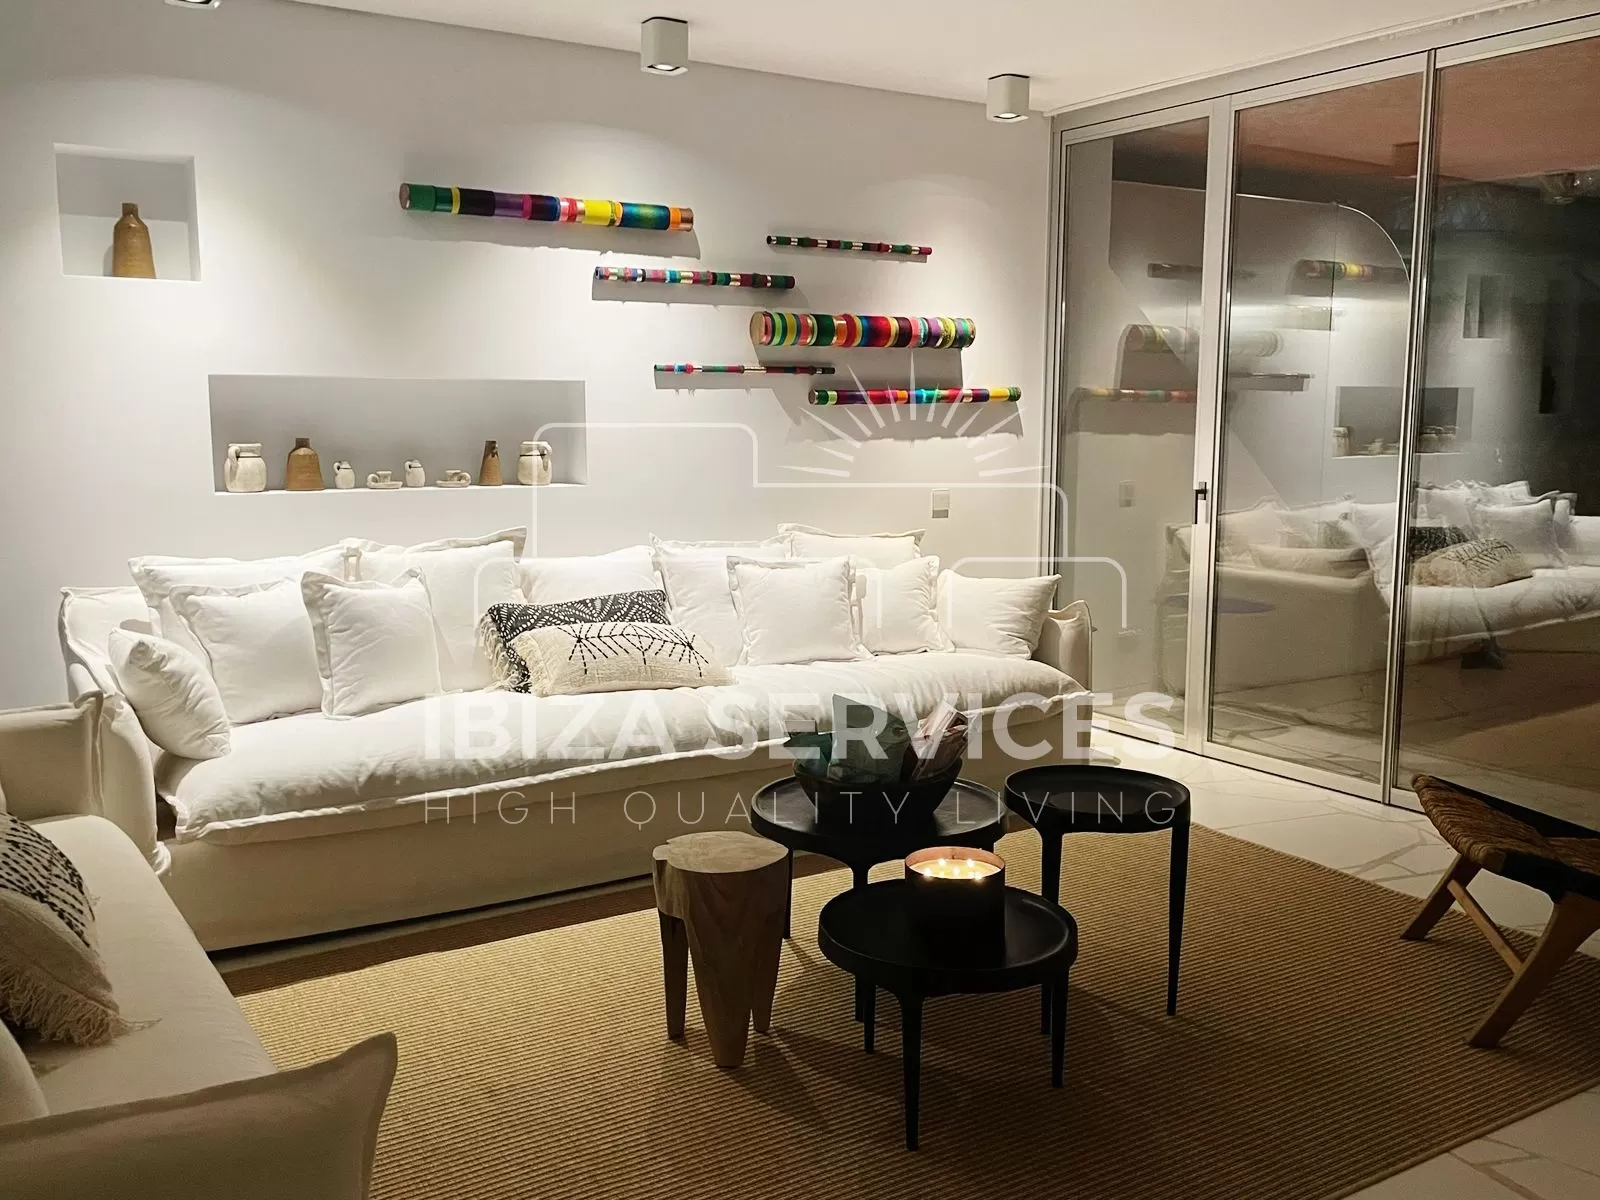 3 bedrooms Luxury Apartment for Seasonal Rental in las boas, botafoch